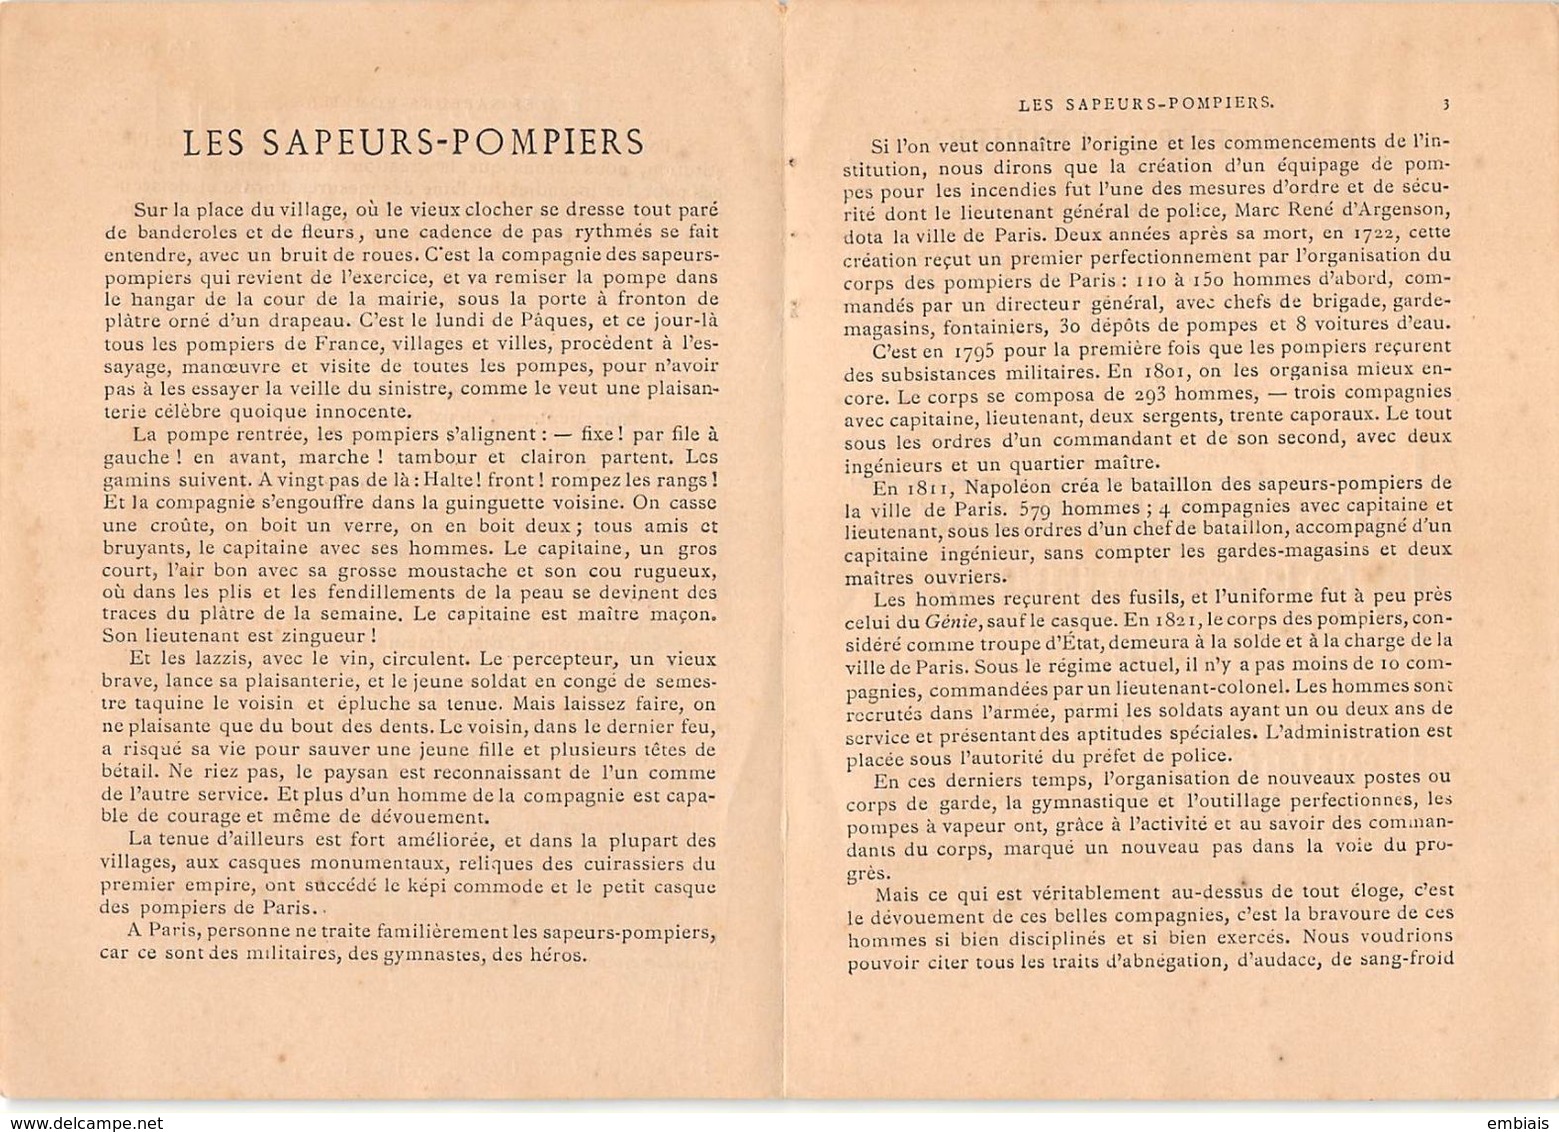 LES SAPEURS POMPIERS N°3 - Histoire- Nouvelle Imagerie Patriotique. Chromotypographie A.Quantin.Paris - Histoire